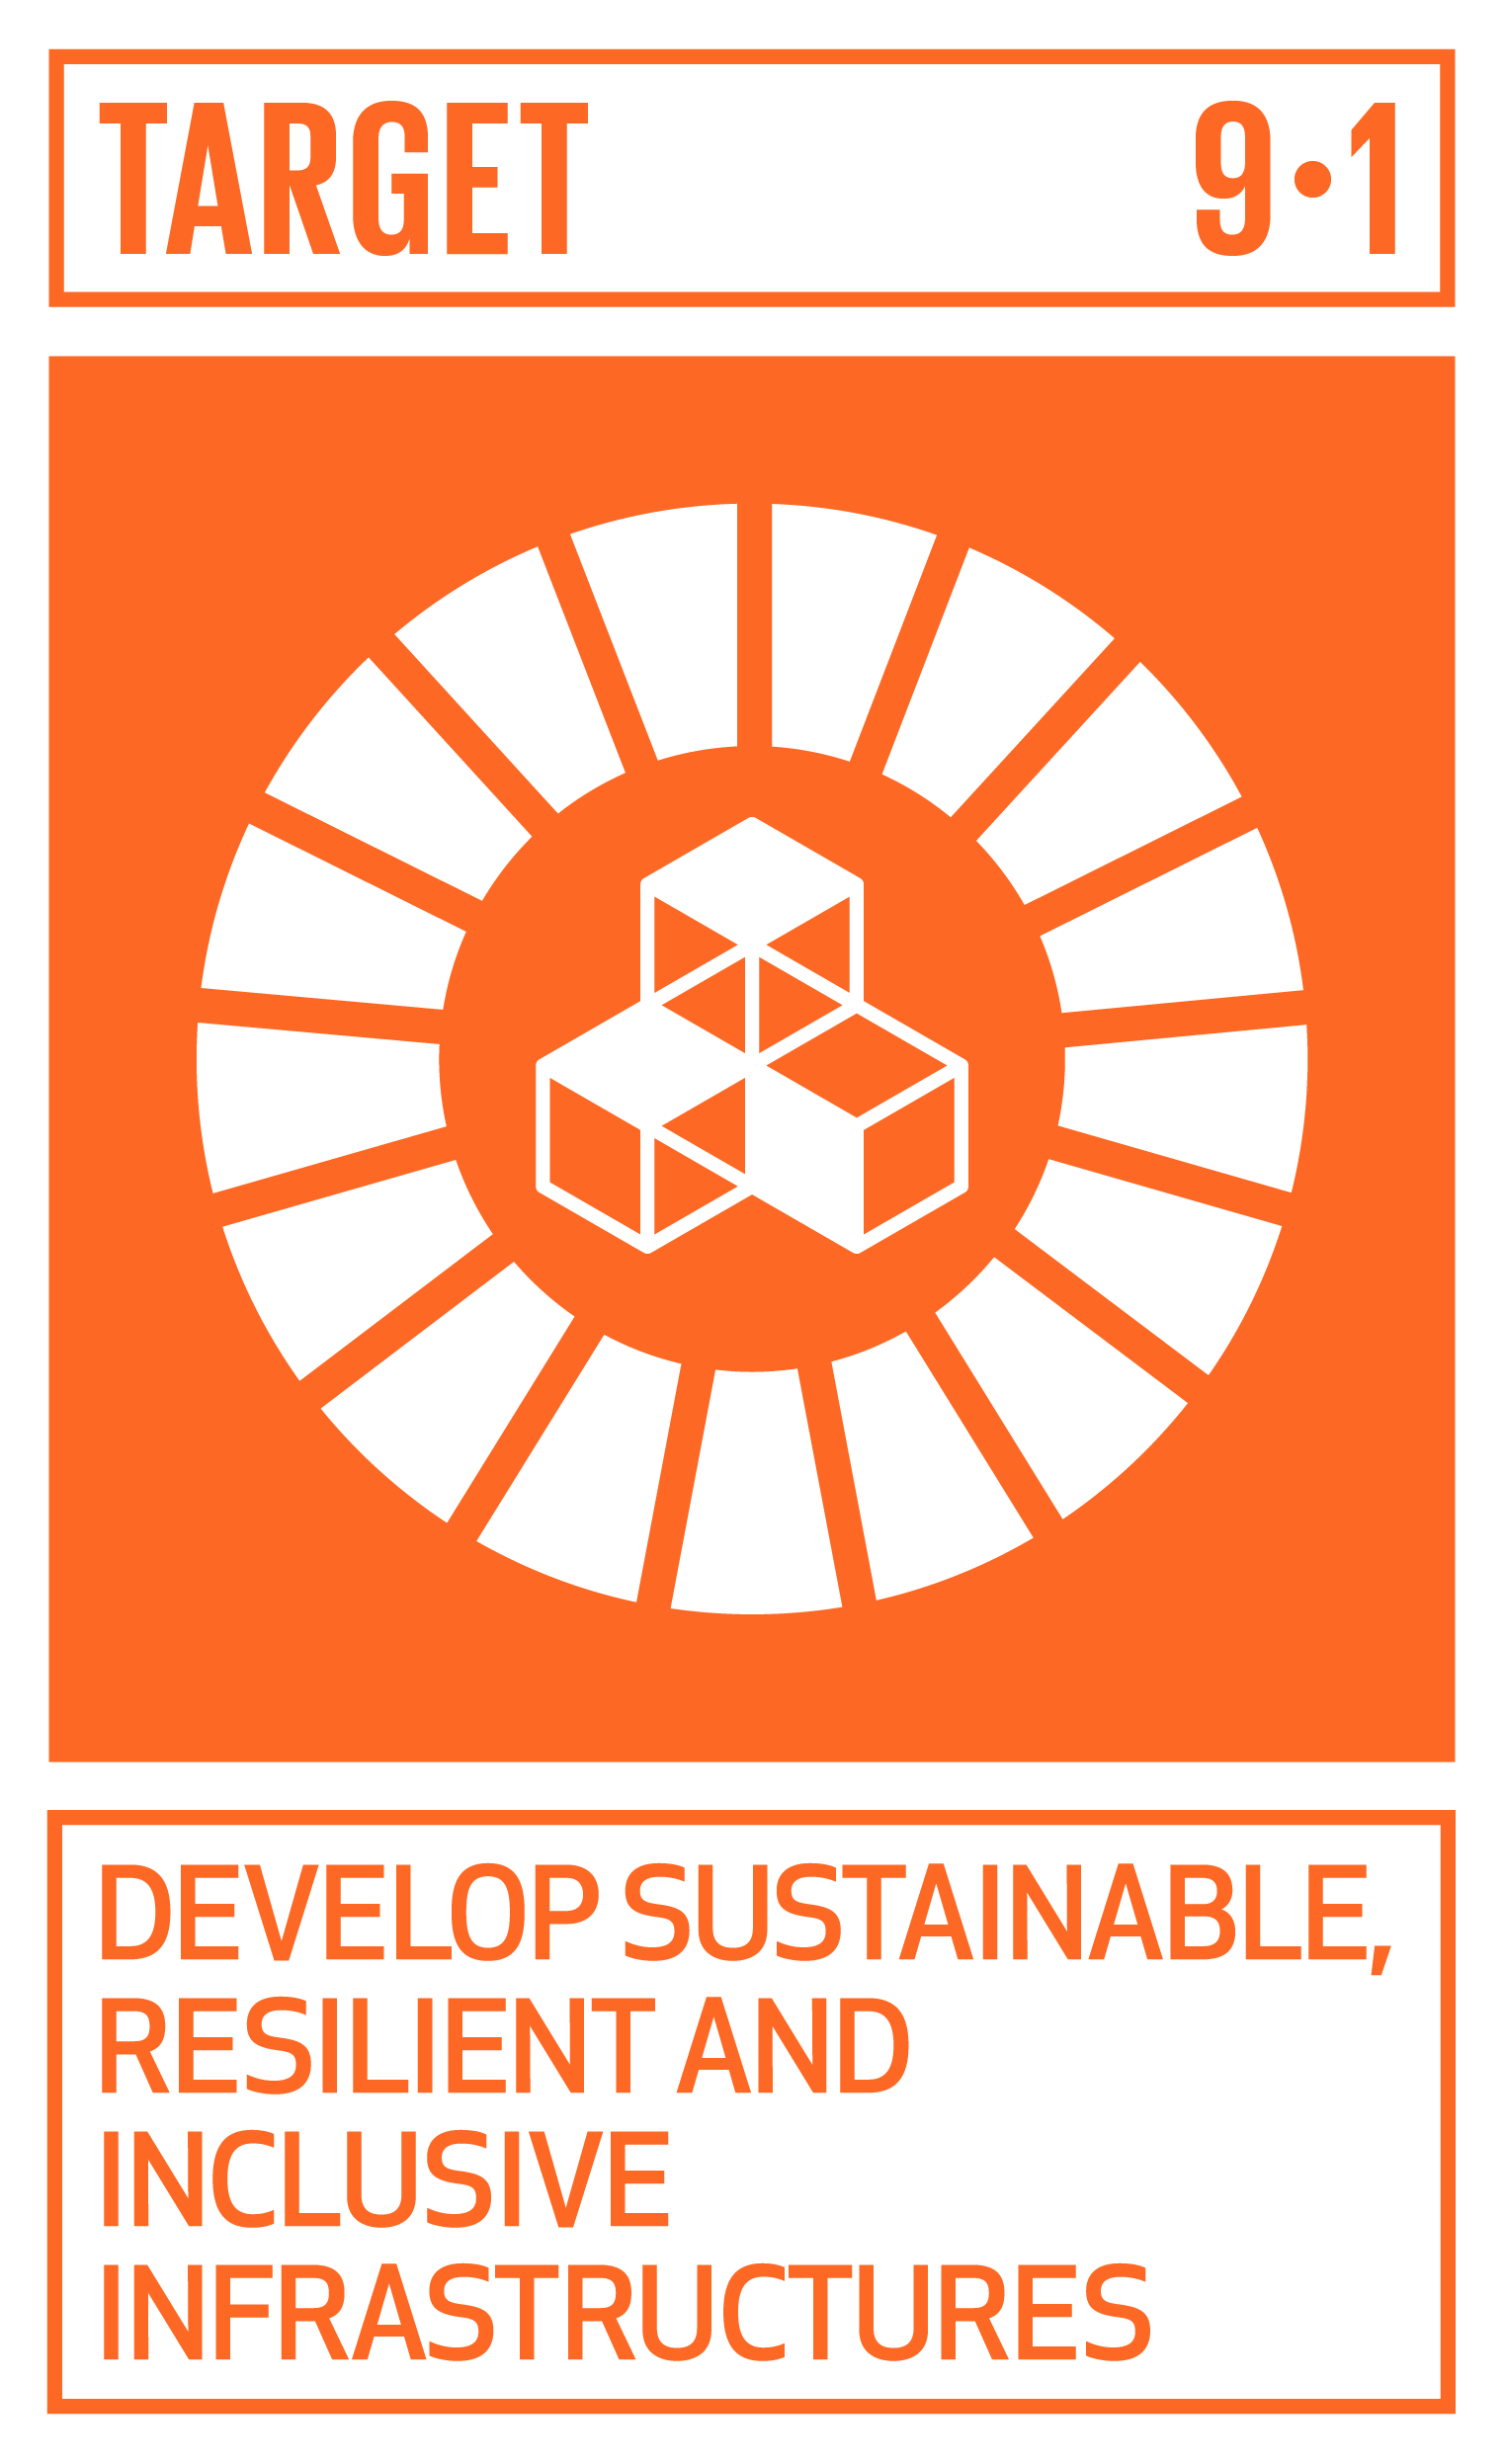 Goal,target,永續發展目標SDGs9,目標9.1發展永續、有彈性和包容性的基礎建設